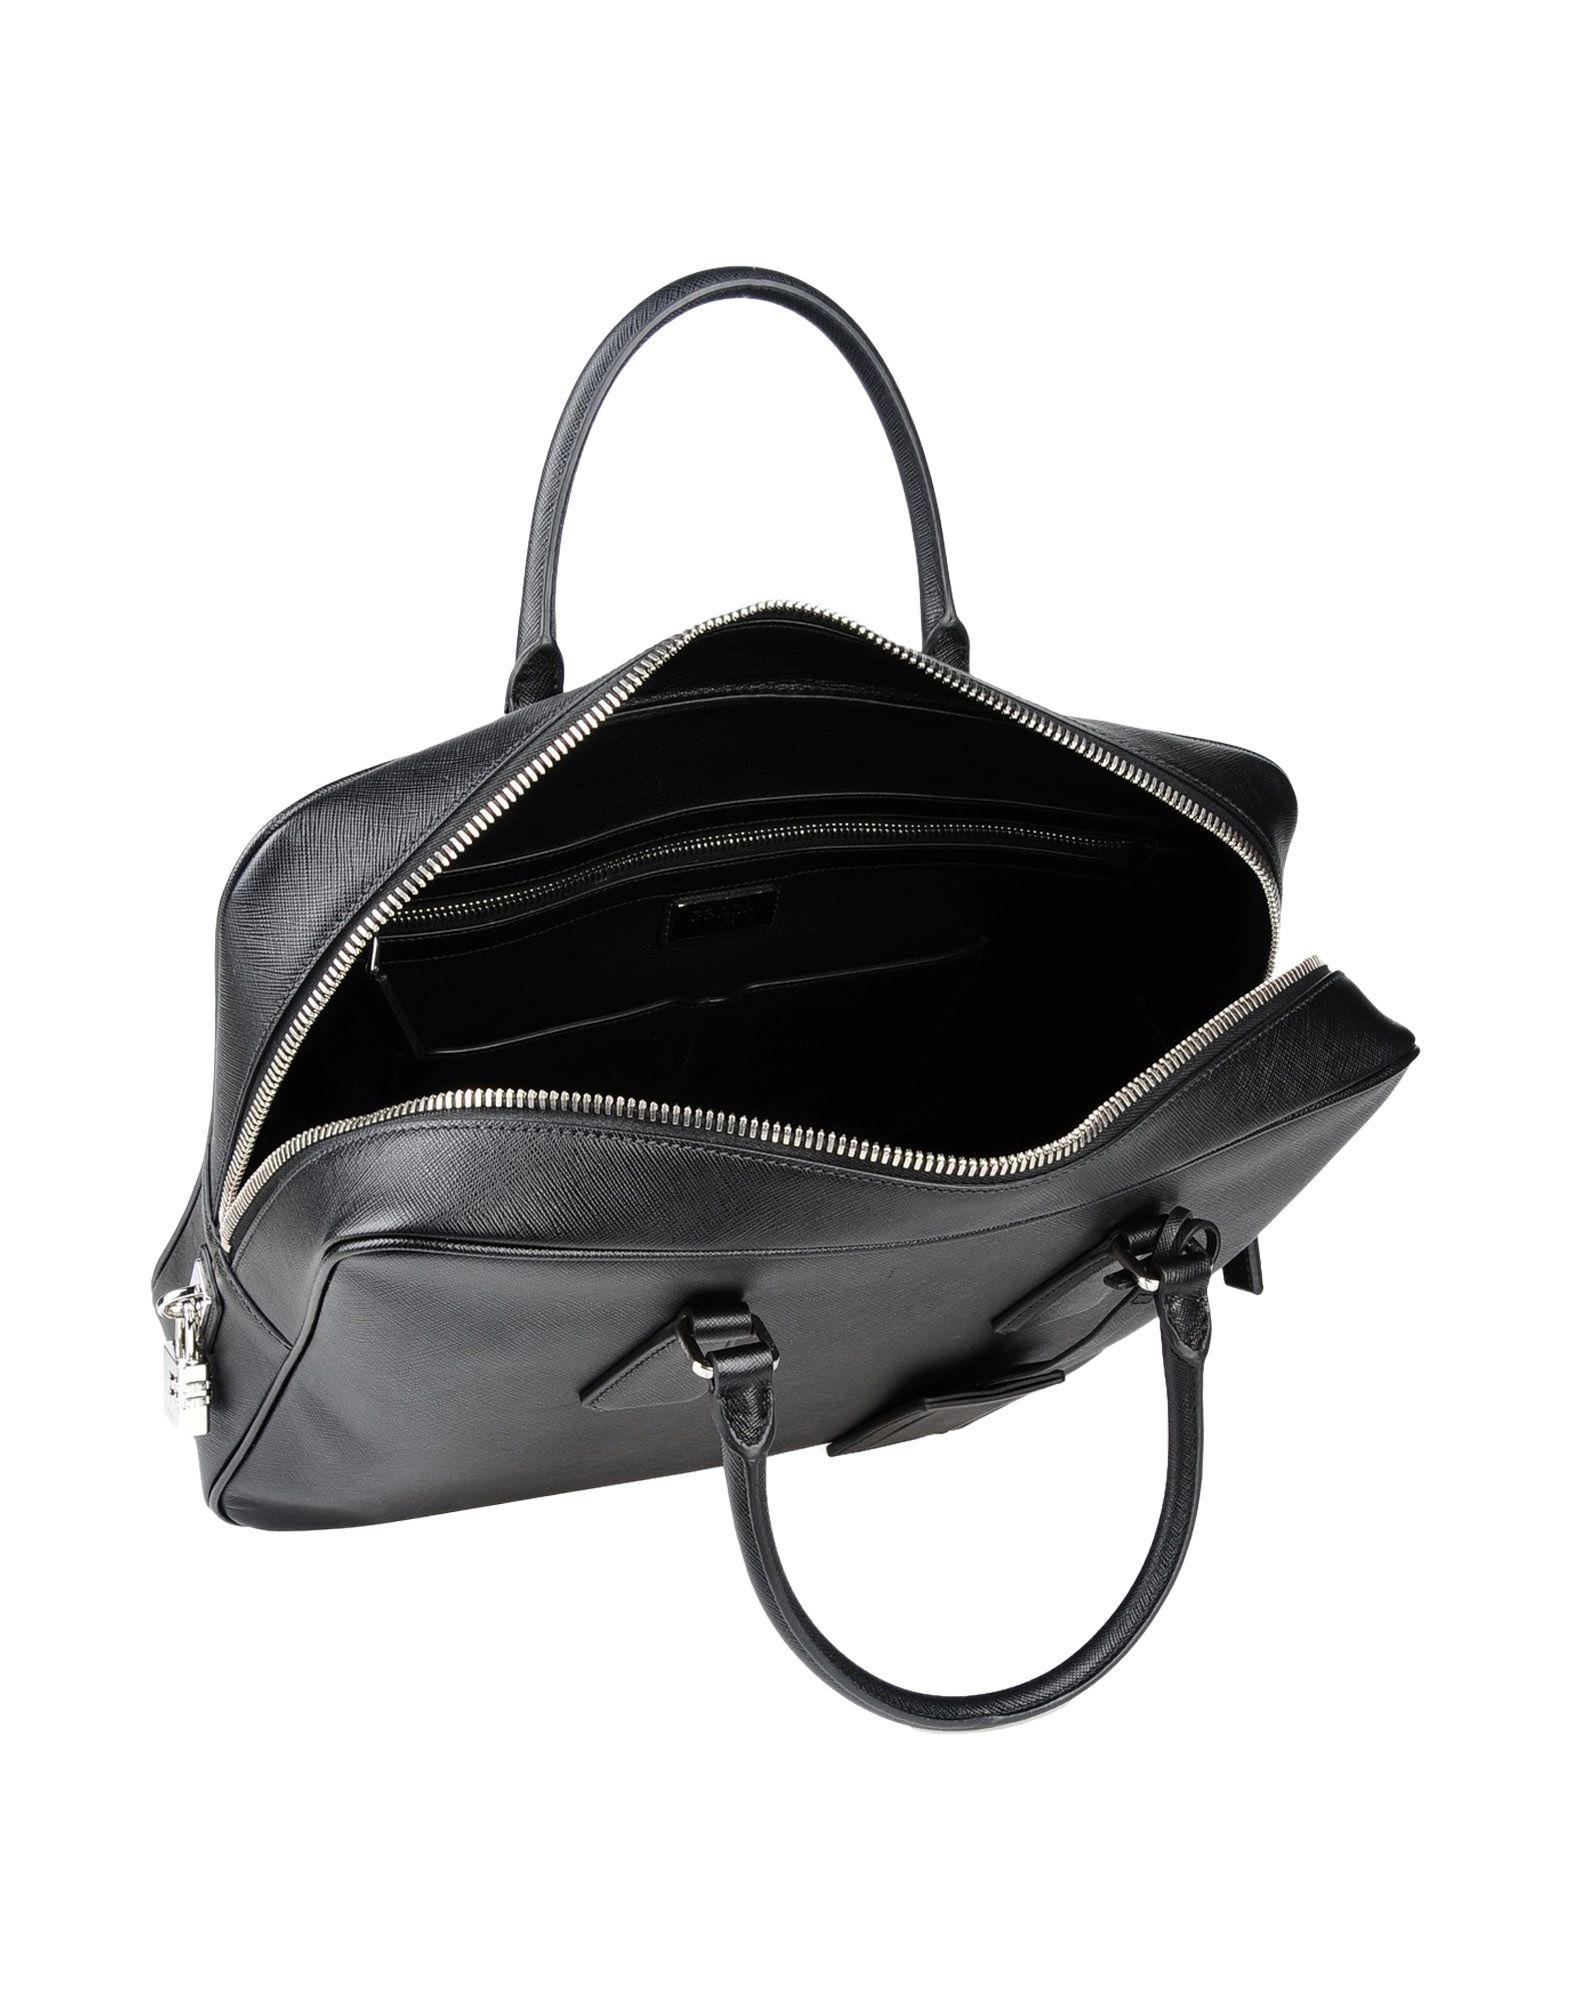 Lyst - Prada Work Bags in Black